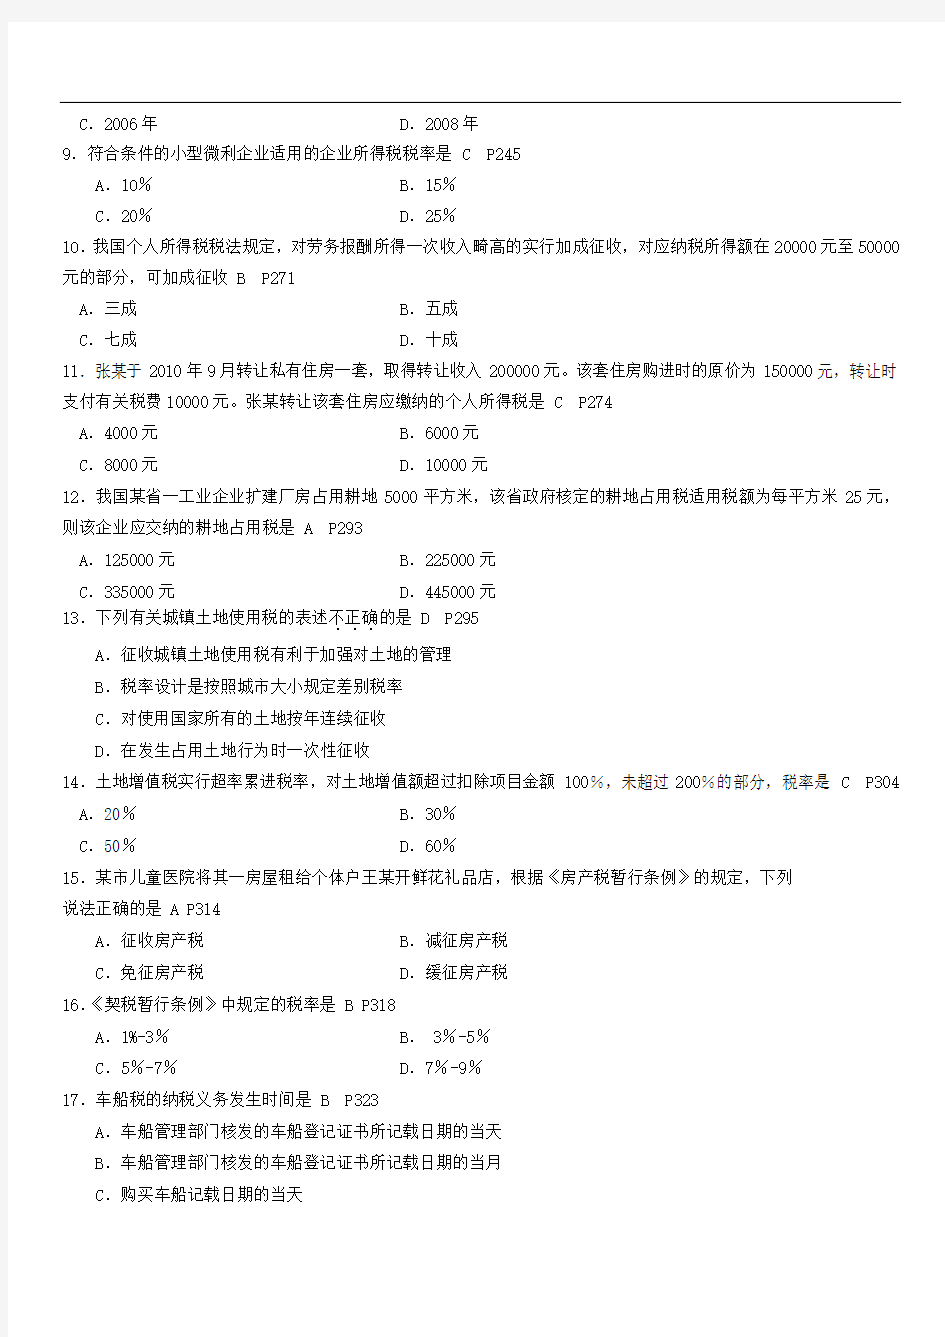 2013年7月全国自考《中国税制》试题及答案